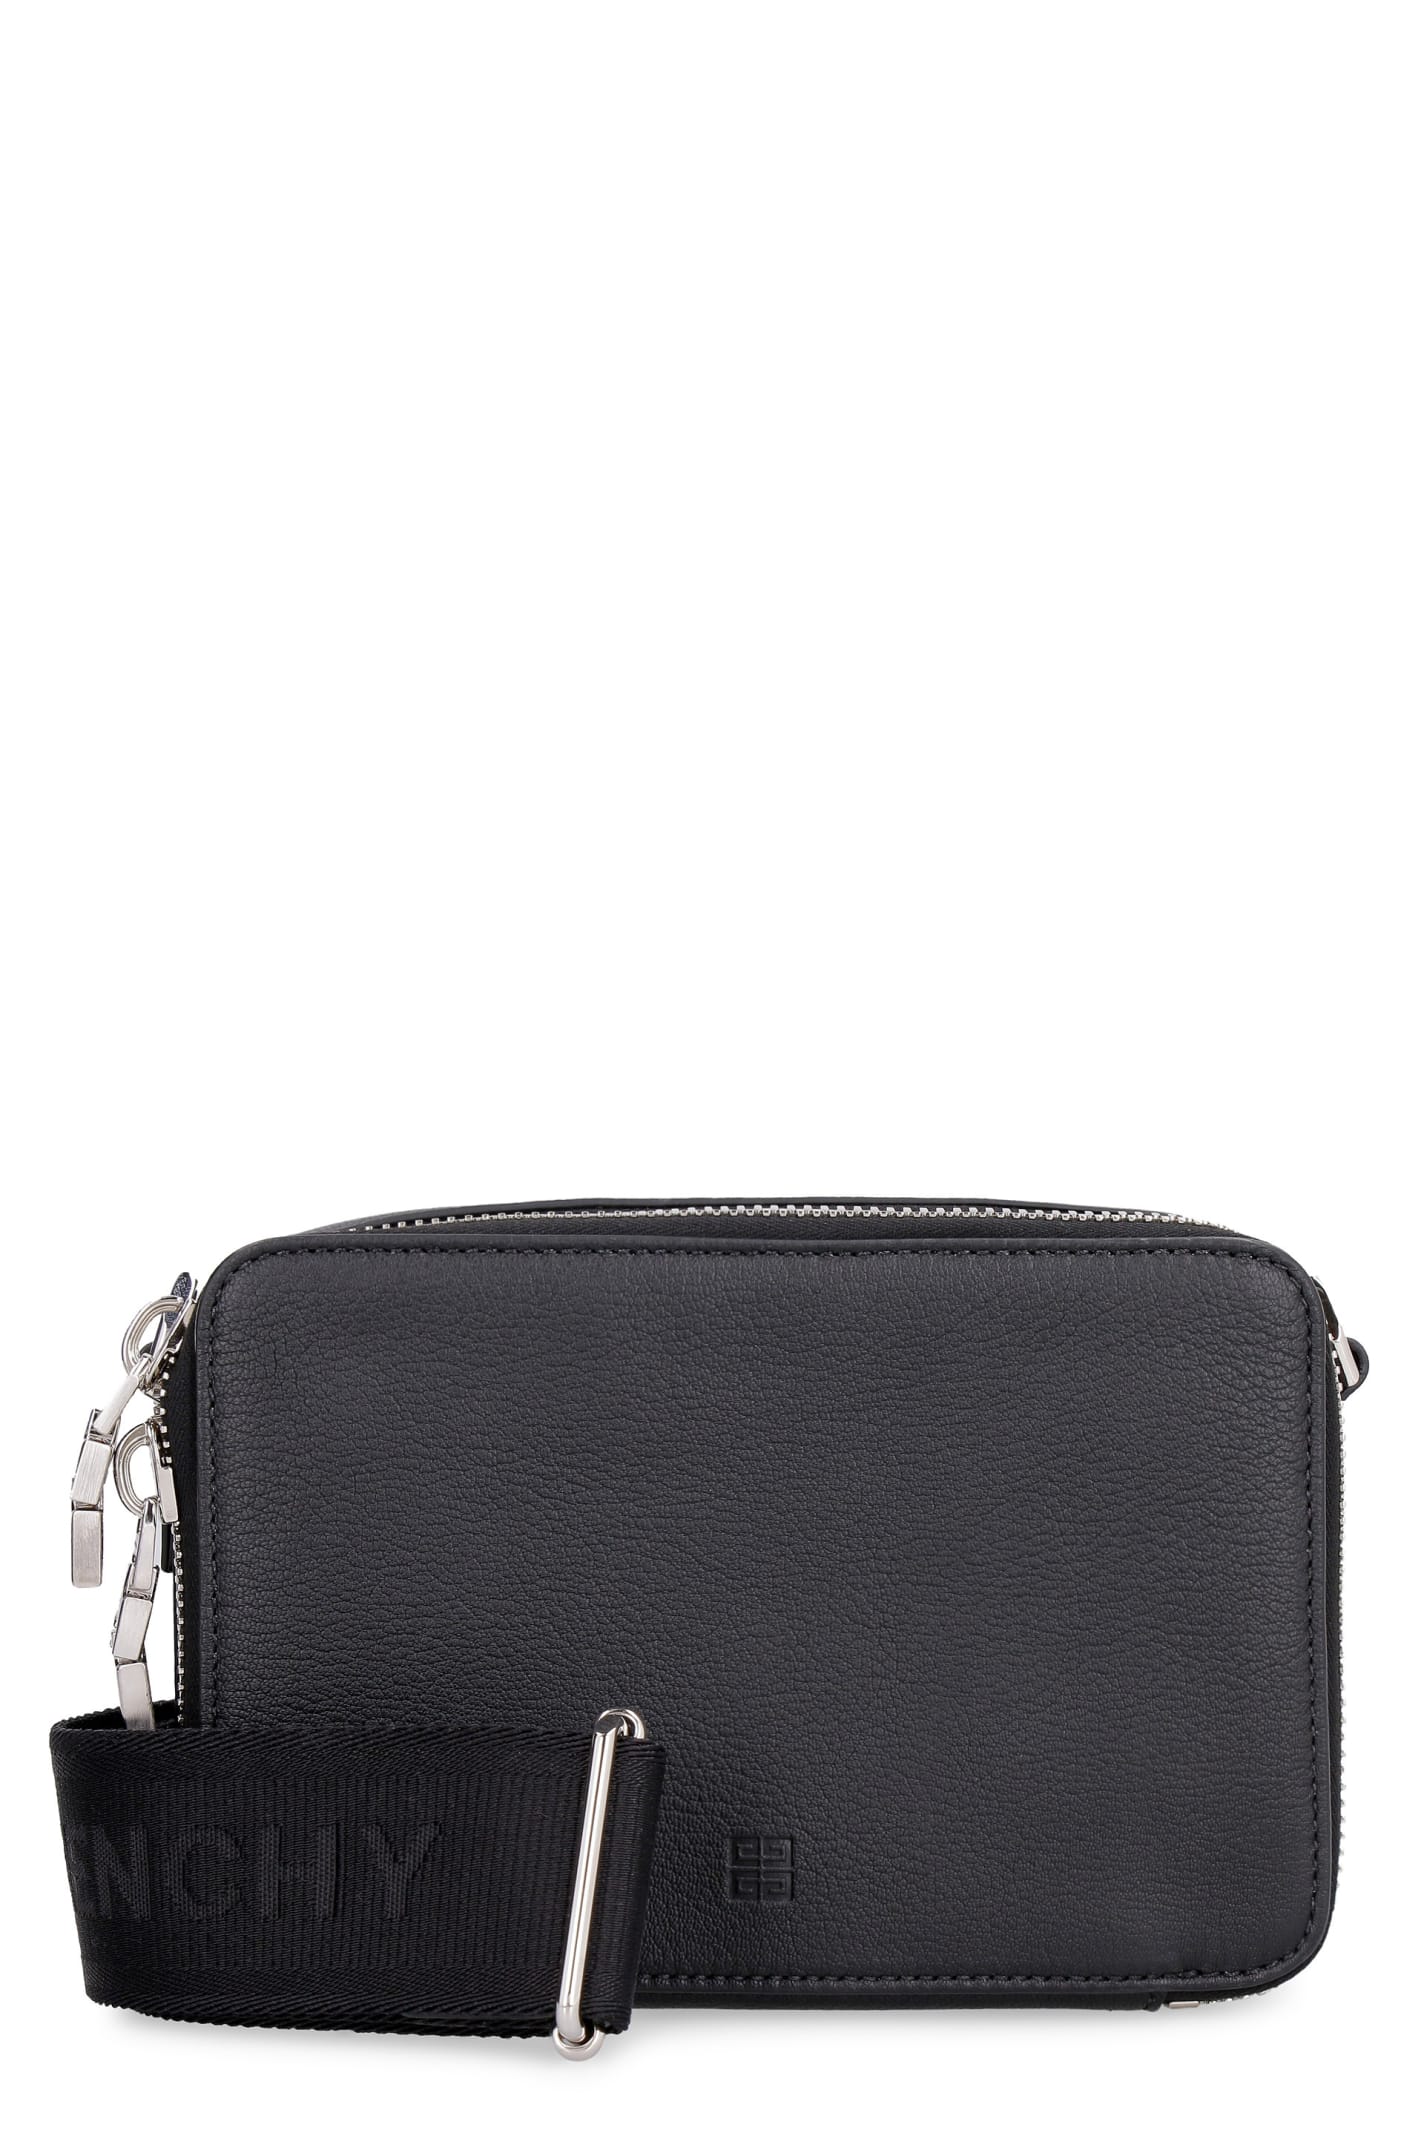 Givenchy Antigona U Leather Camera Bag